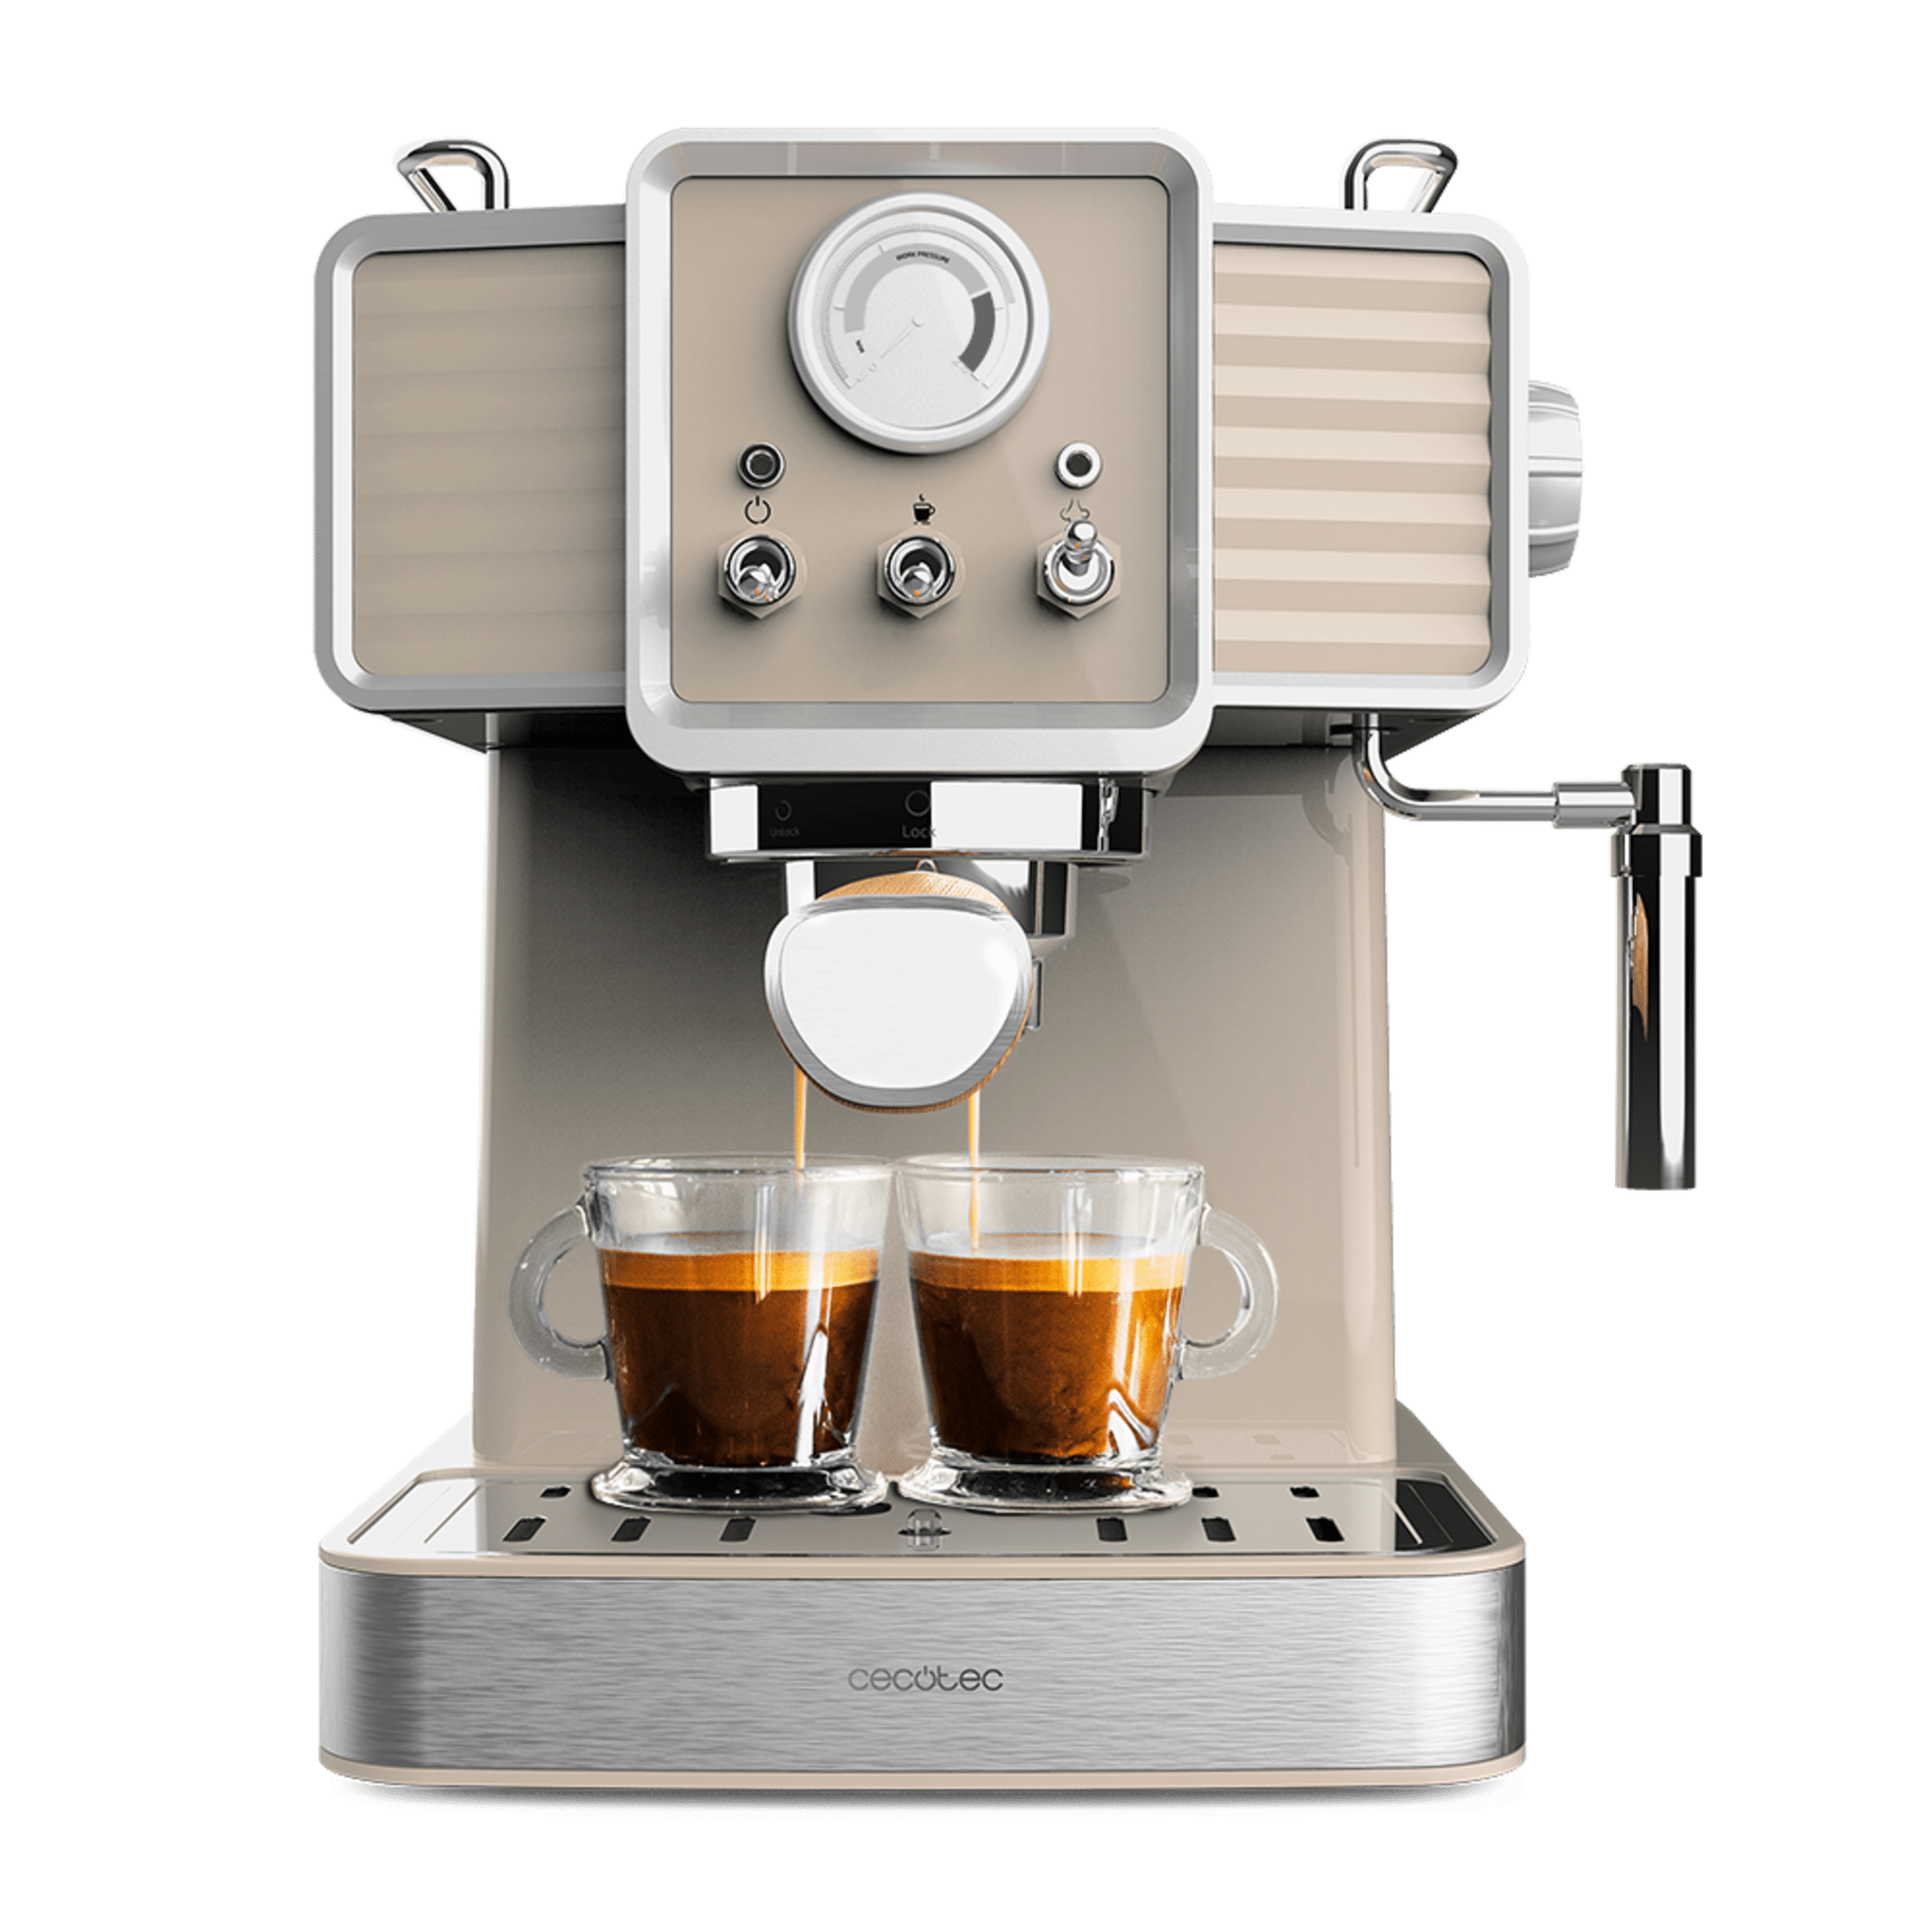 Cafetera Express Power Espresso 20 Tradizionale Light Beige para espressos y cappuccinos, rápido Sistema de Calentamiento por thermoblock, 20 Bares, manómetro PressurePro y vaporizador orientable